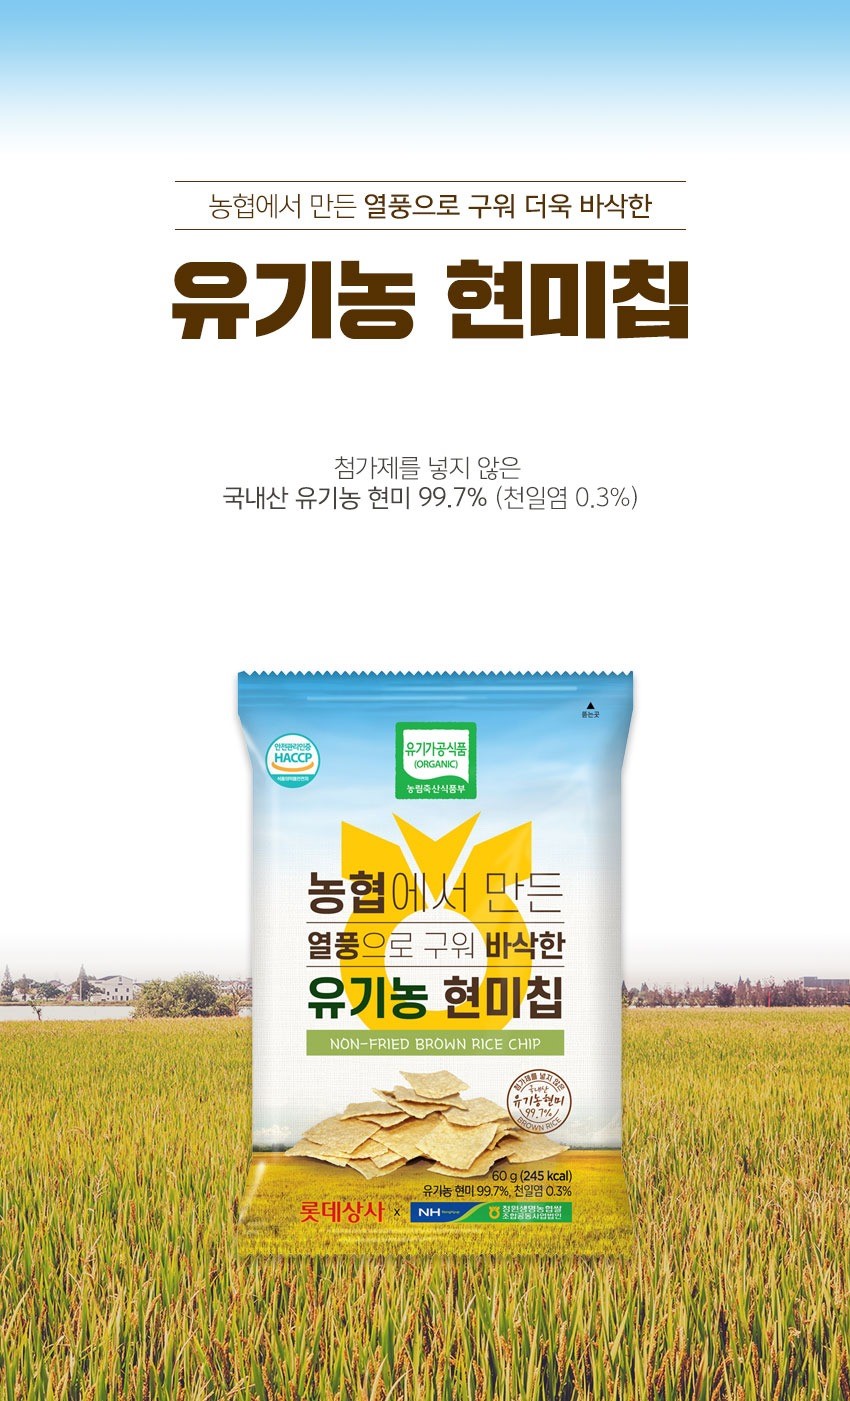 韓國食品-[Nongnimfood] Non-Fried Brown Rice Chip 60g